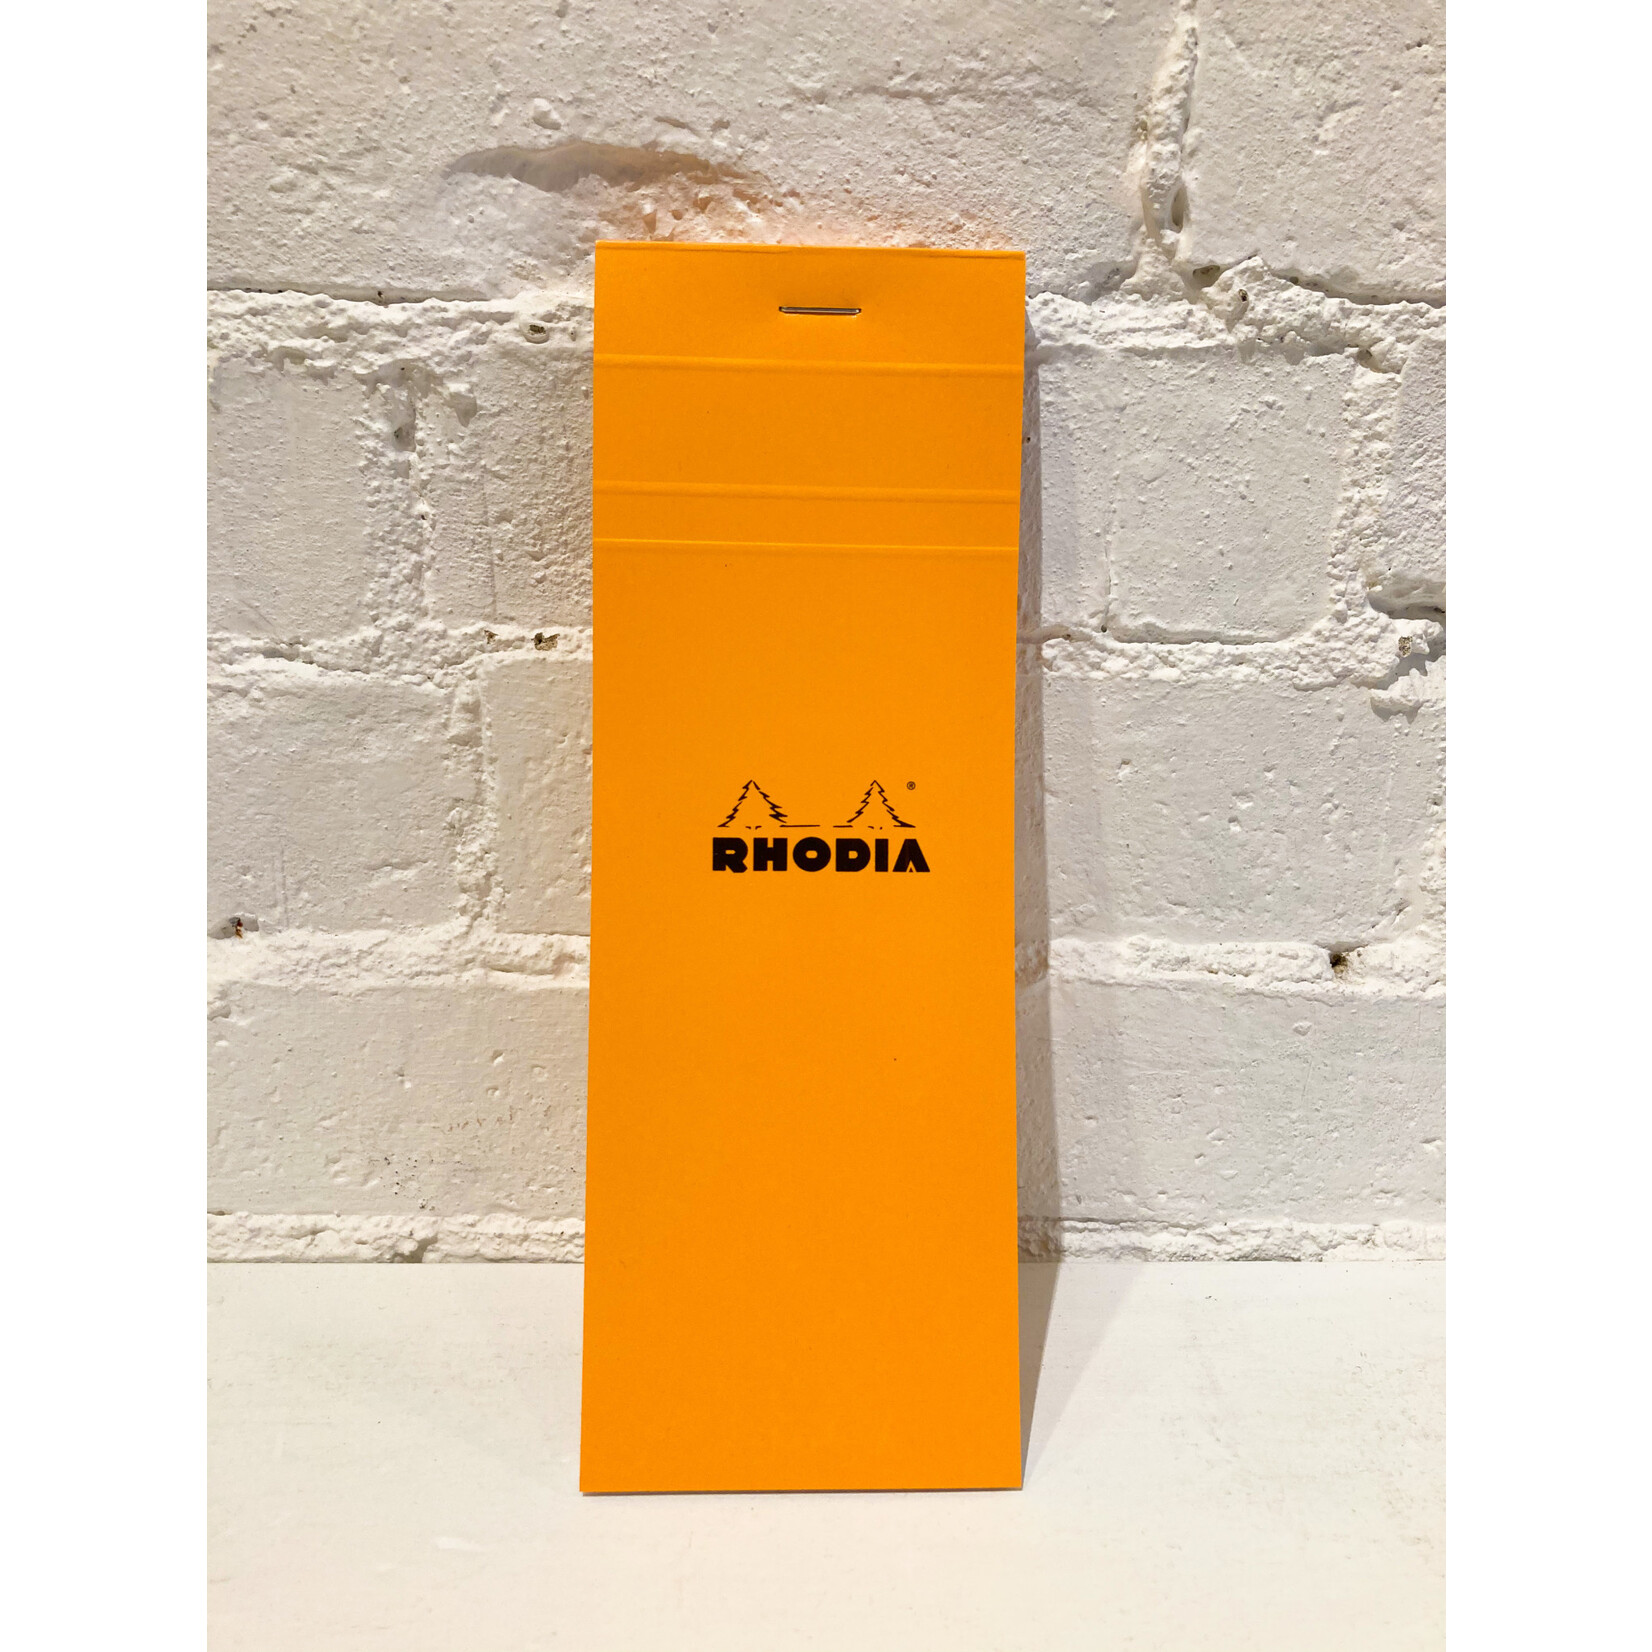 Rhodia Bloc Rhodia #8 Orange